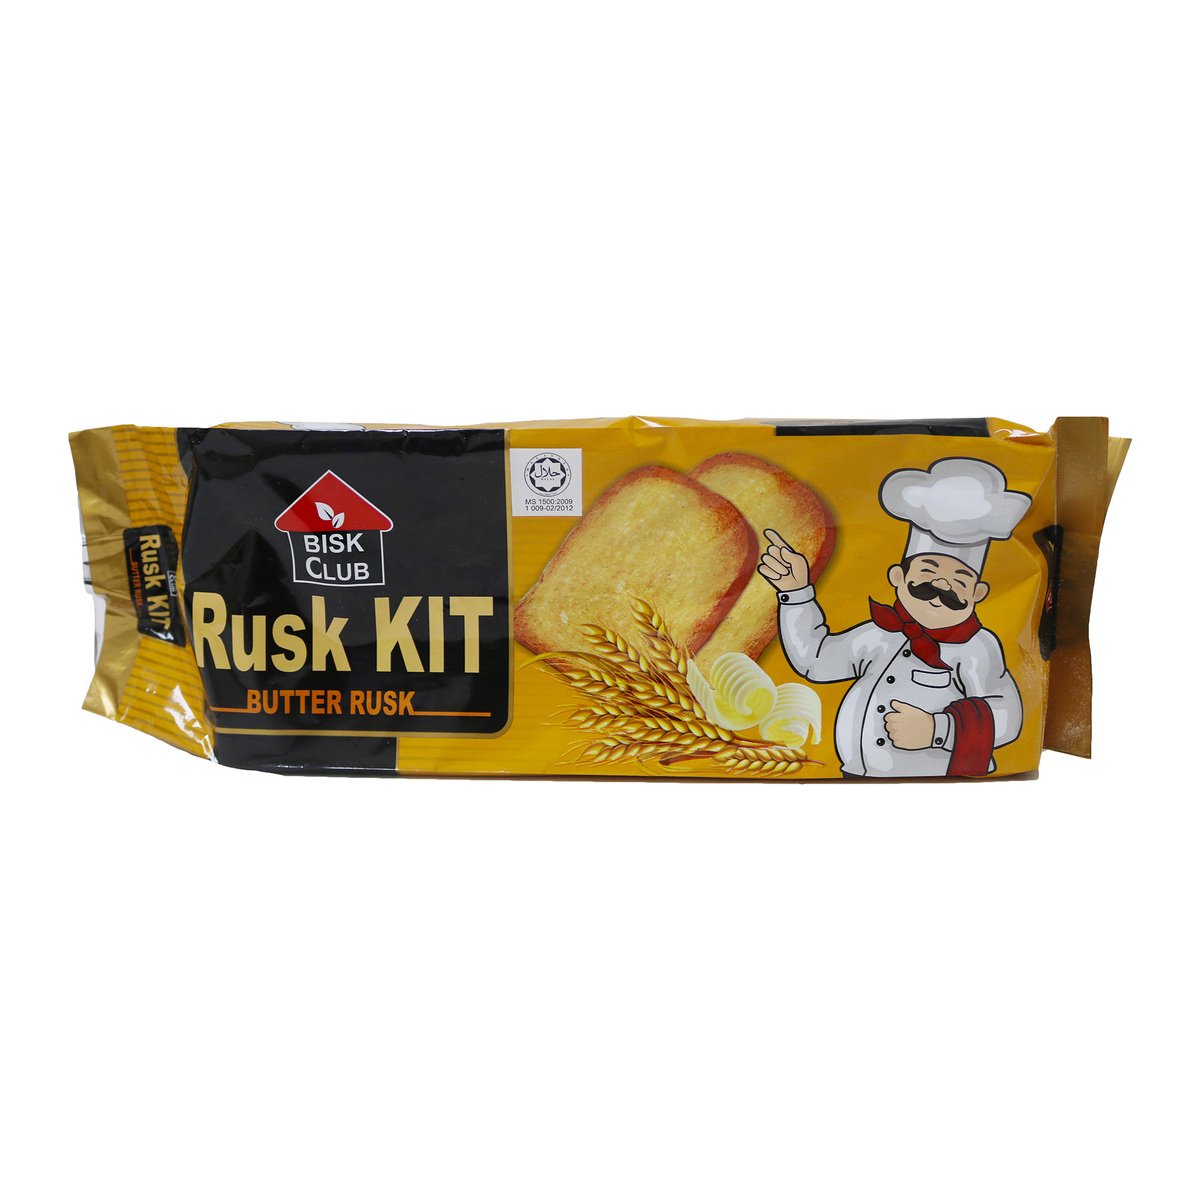 Bisk Club Rusk Kit 330g